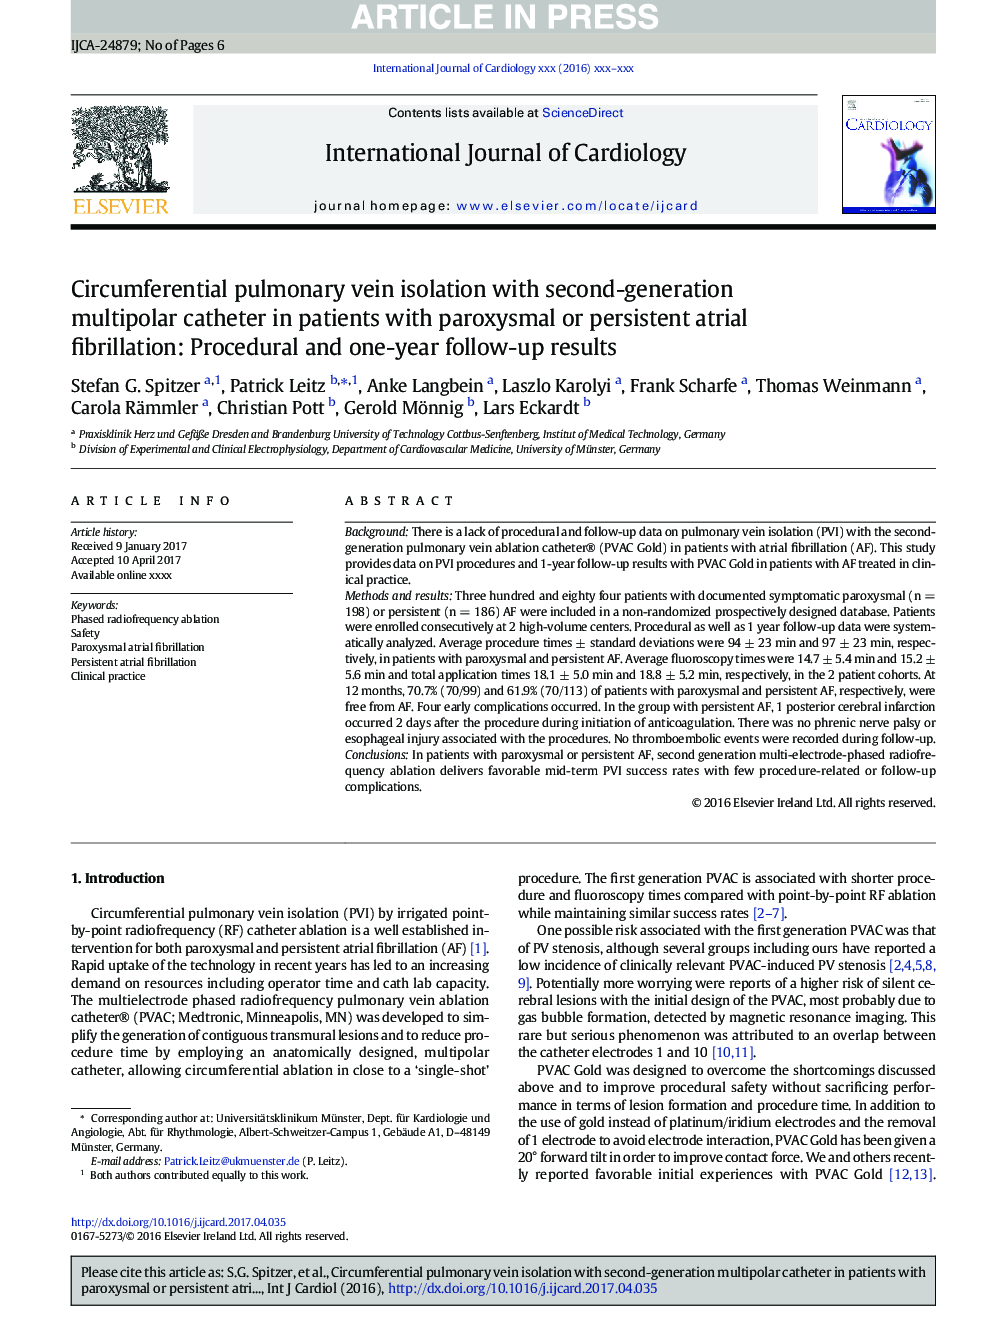 جداسازی ورید ریوی رحم با کاتتر چند قطبی نسل دوم در بیماران مبتلا به فیبریلاسیون دهلیزی دائمی و دائمی: نتایج پیگیری پروپوزال و یکساله 